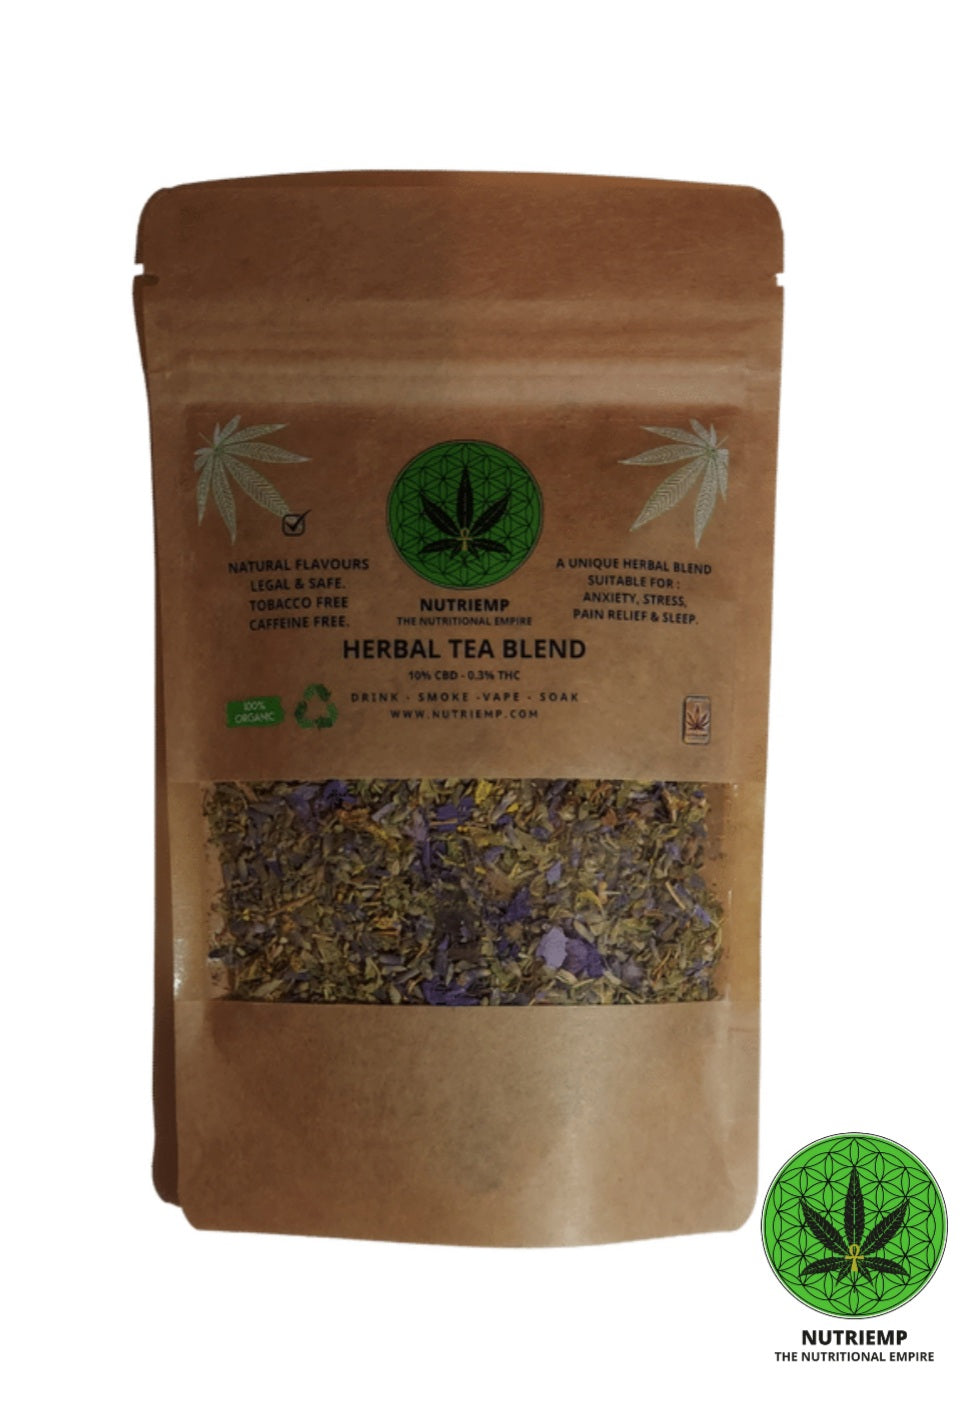 Blue Lotus & Lavender CBD Nutriemp Herbal Tea Blend 20g